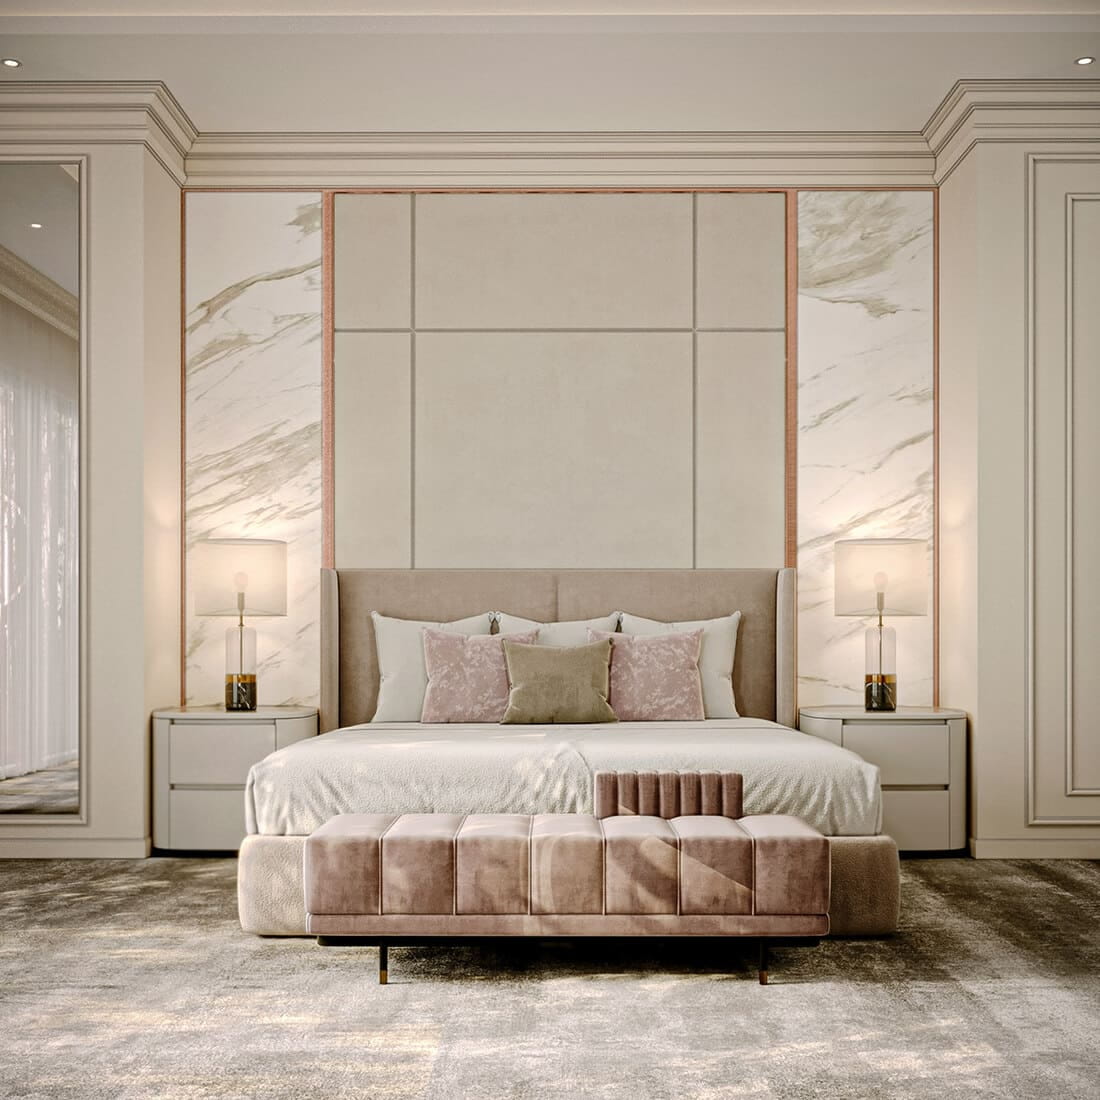 Giường ngủ tông màu hồng nhẹ nhà thích hợp cho các cô gái